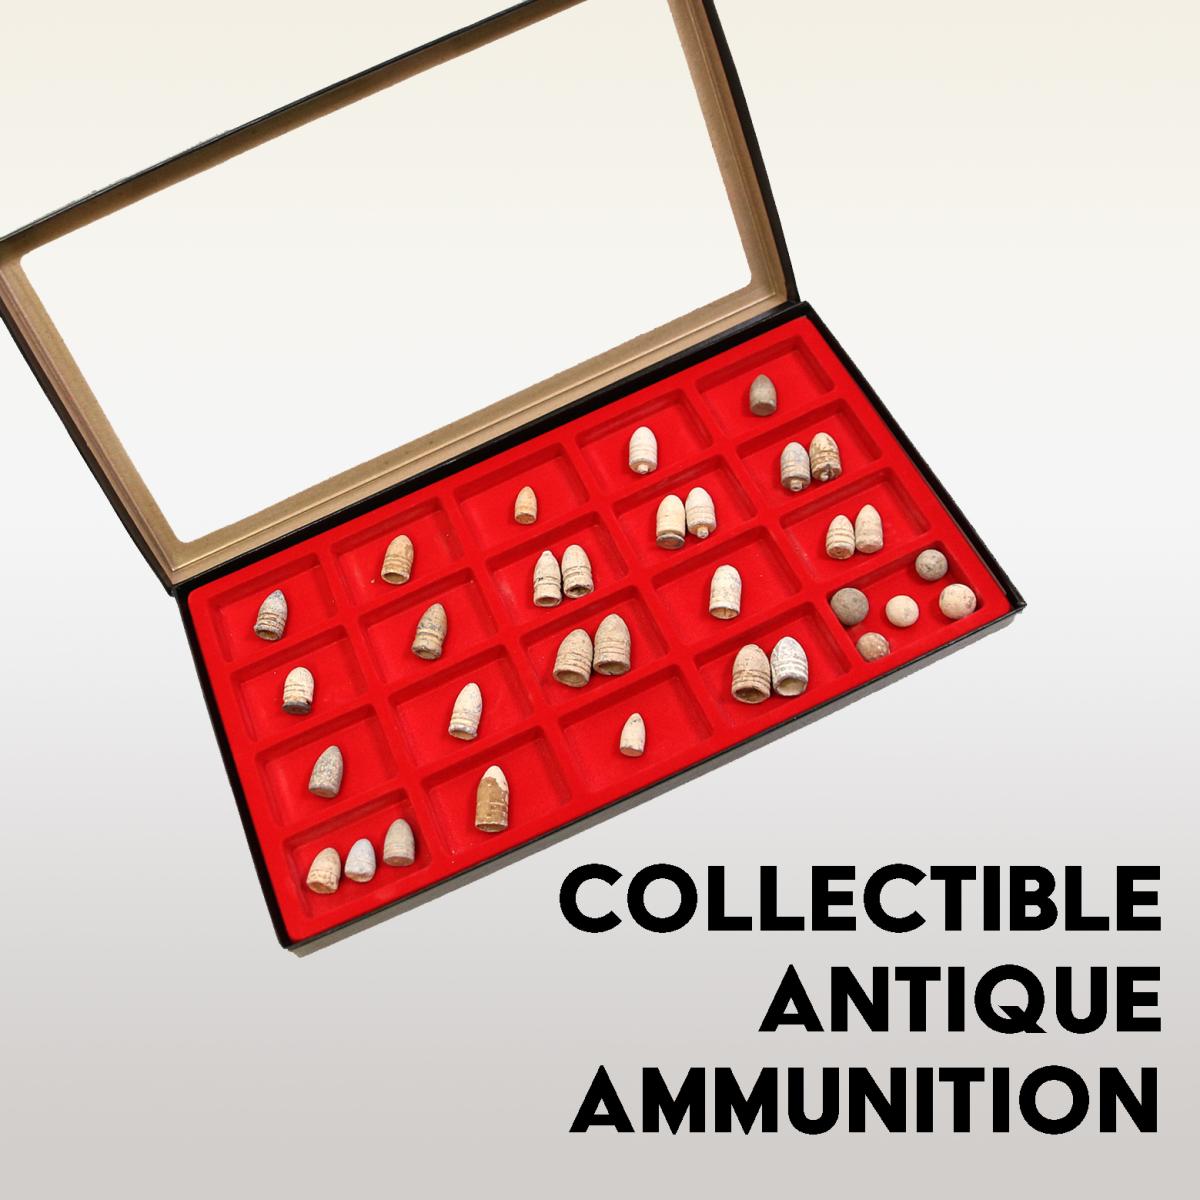 Collectible Antique Ammunition